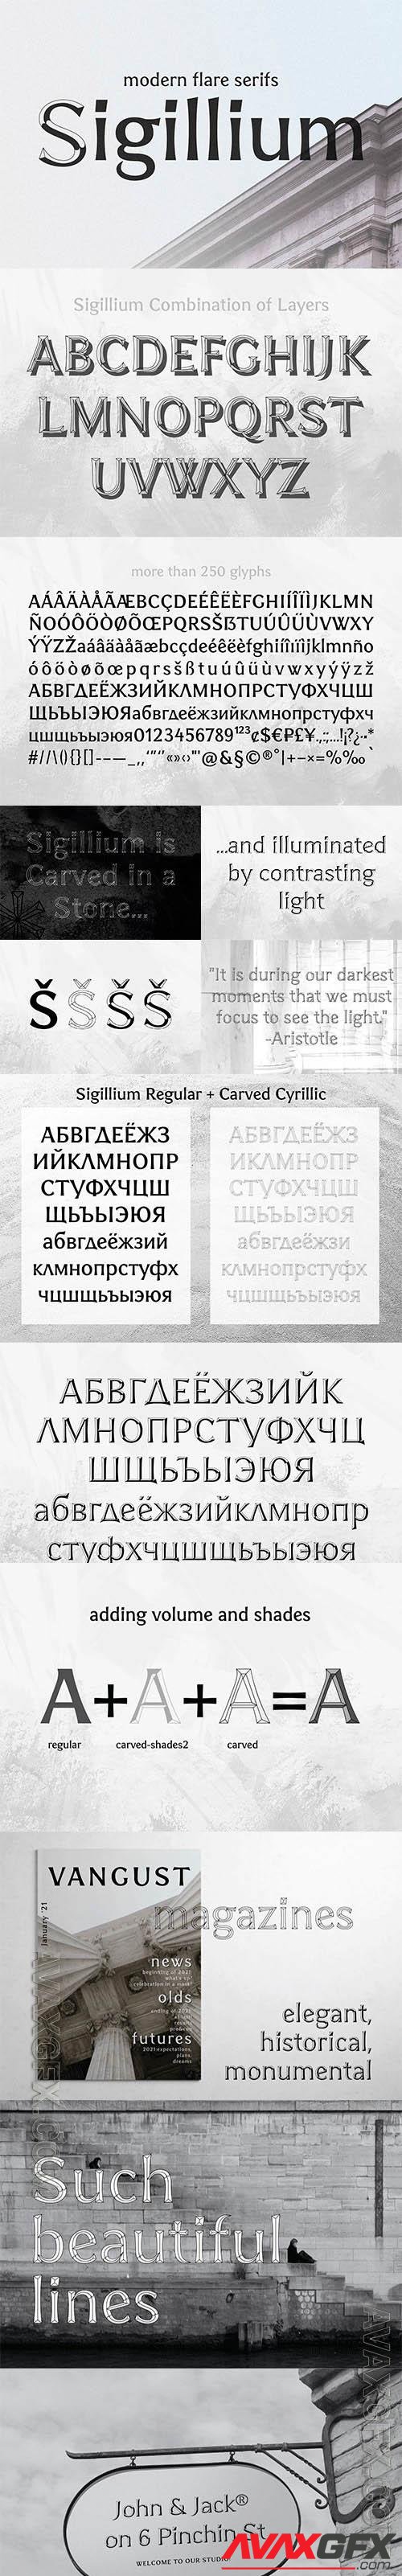 Sigillium - carved flare serif fonts 5687056